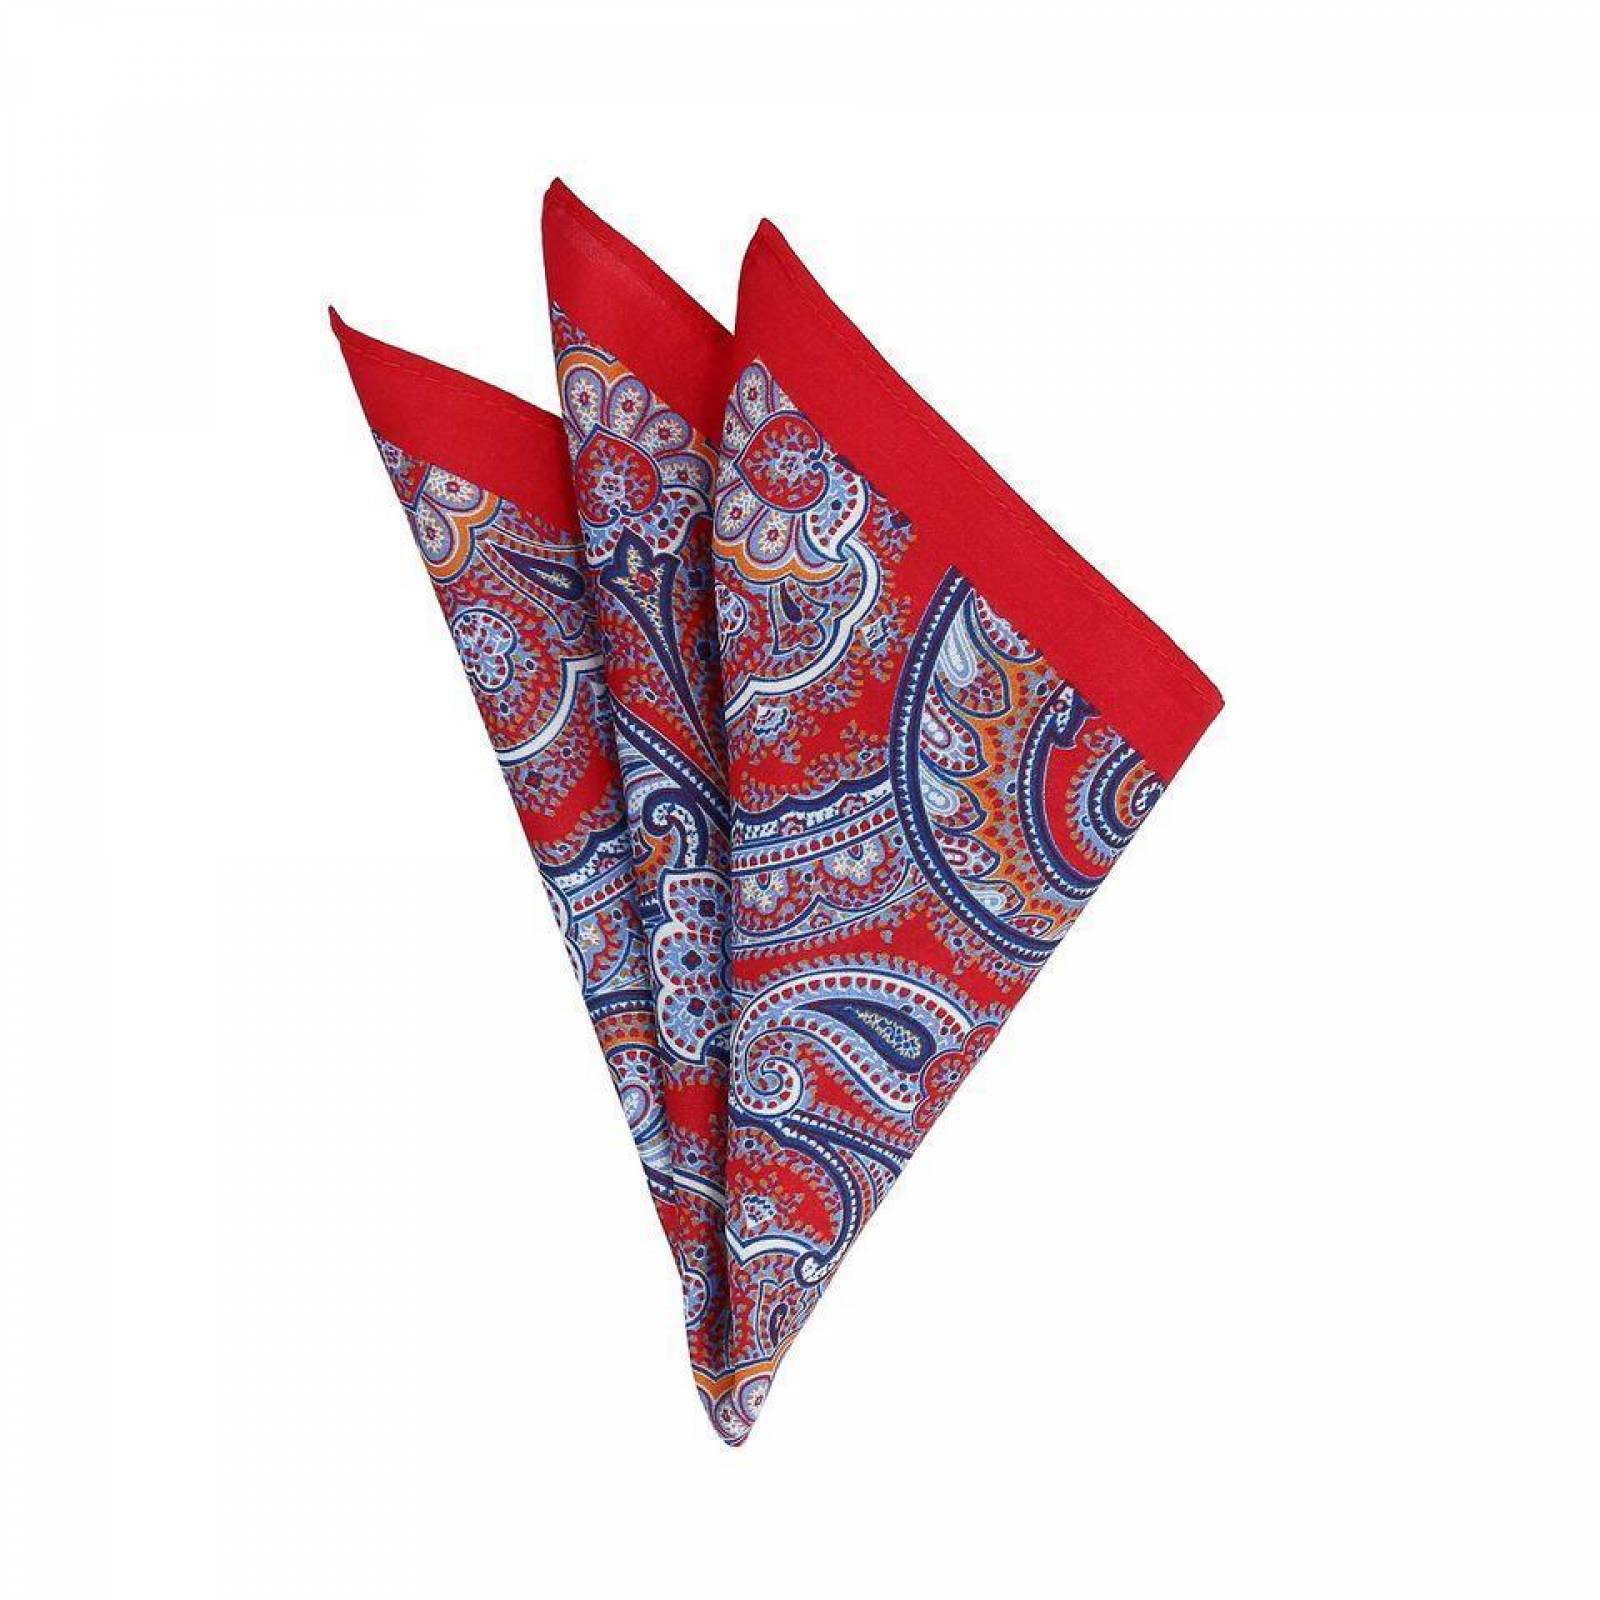 Pañuelo Royal Flush rojo con cachemira de colores 